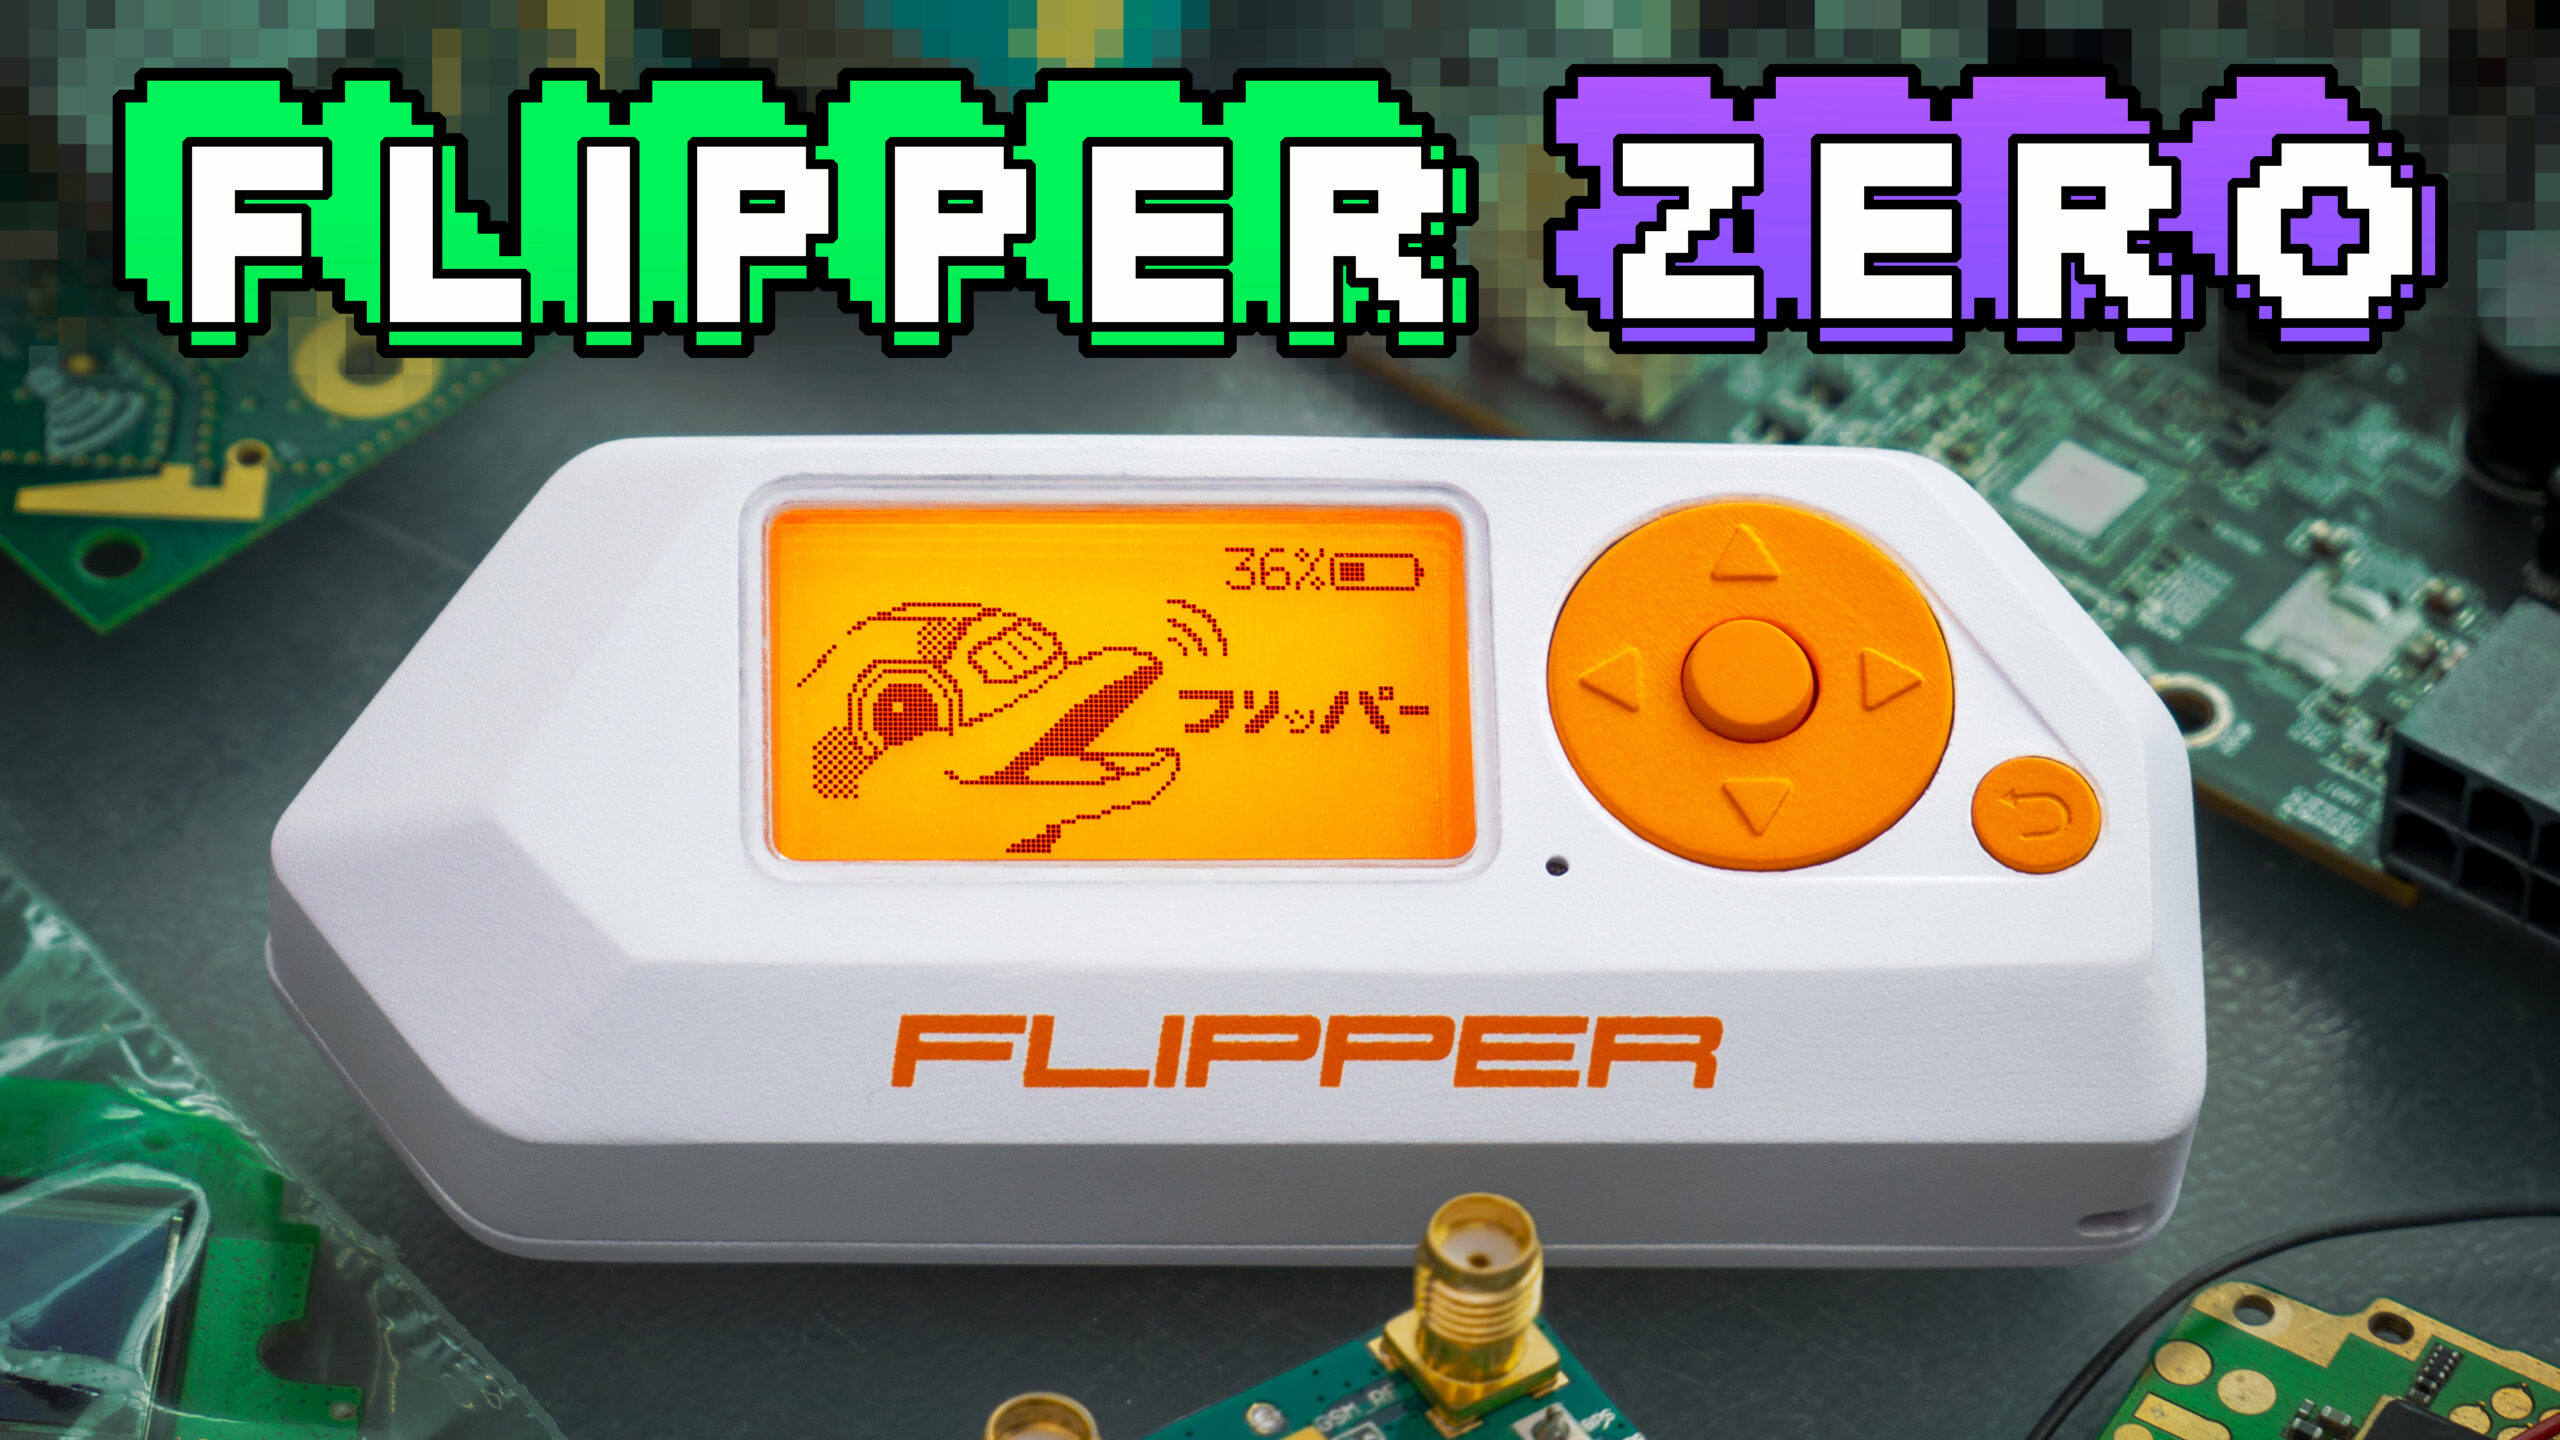 Le Flipper Zero, nouvelle arme du hacker ou gadget pour geek